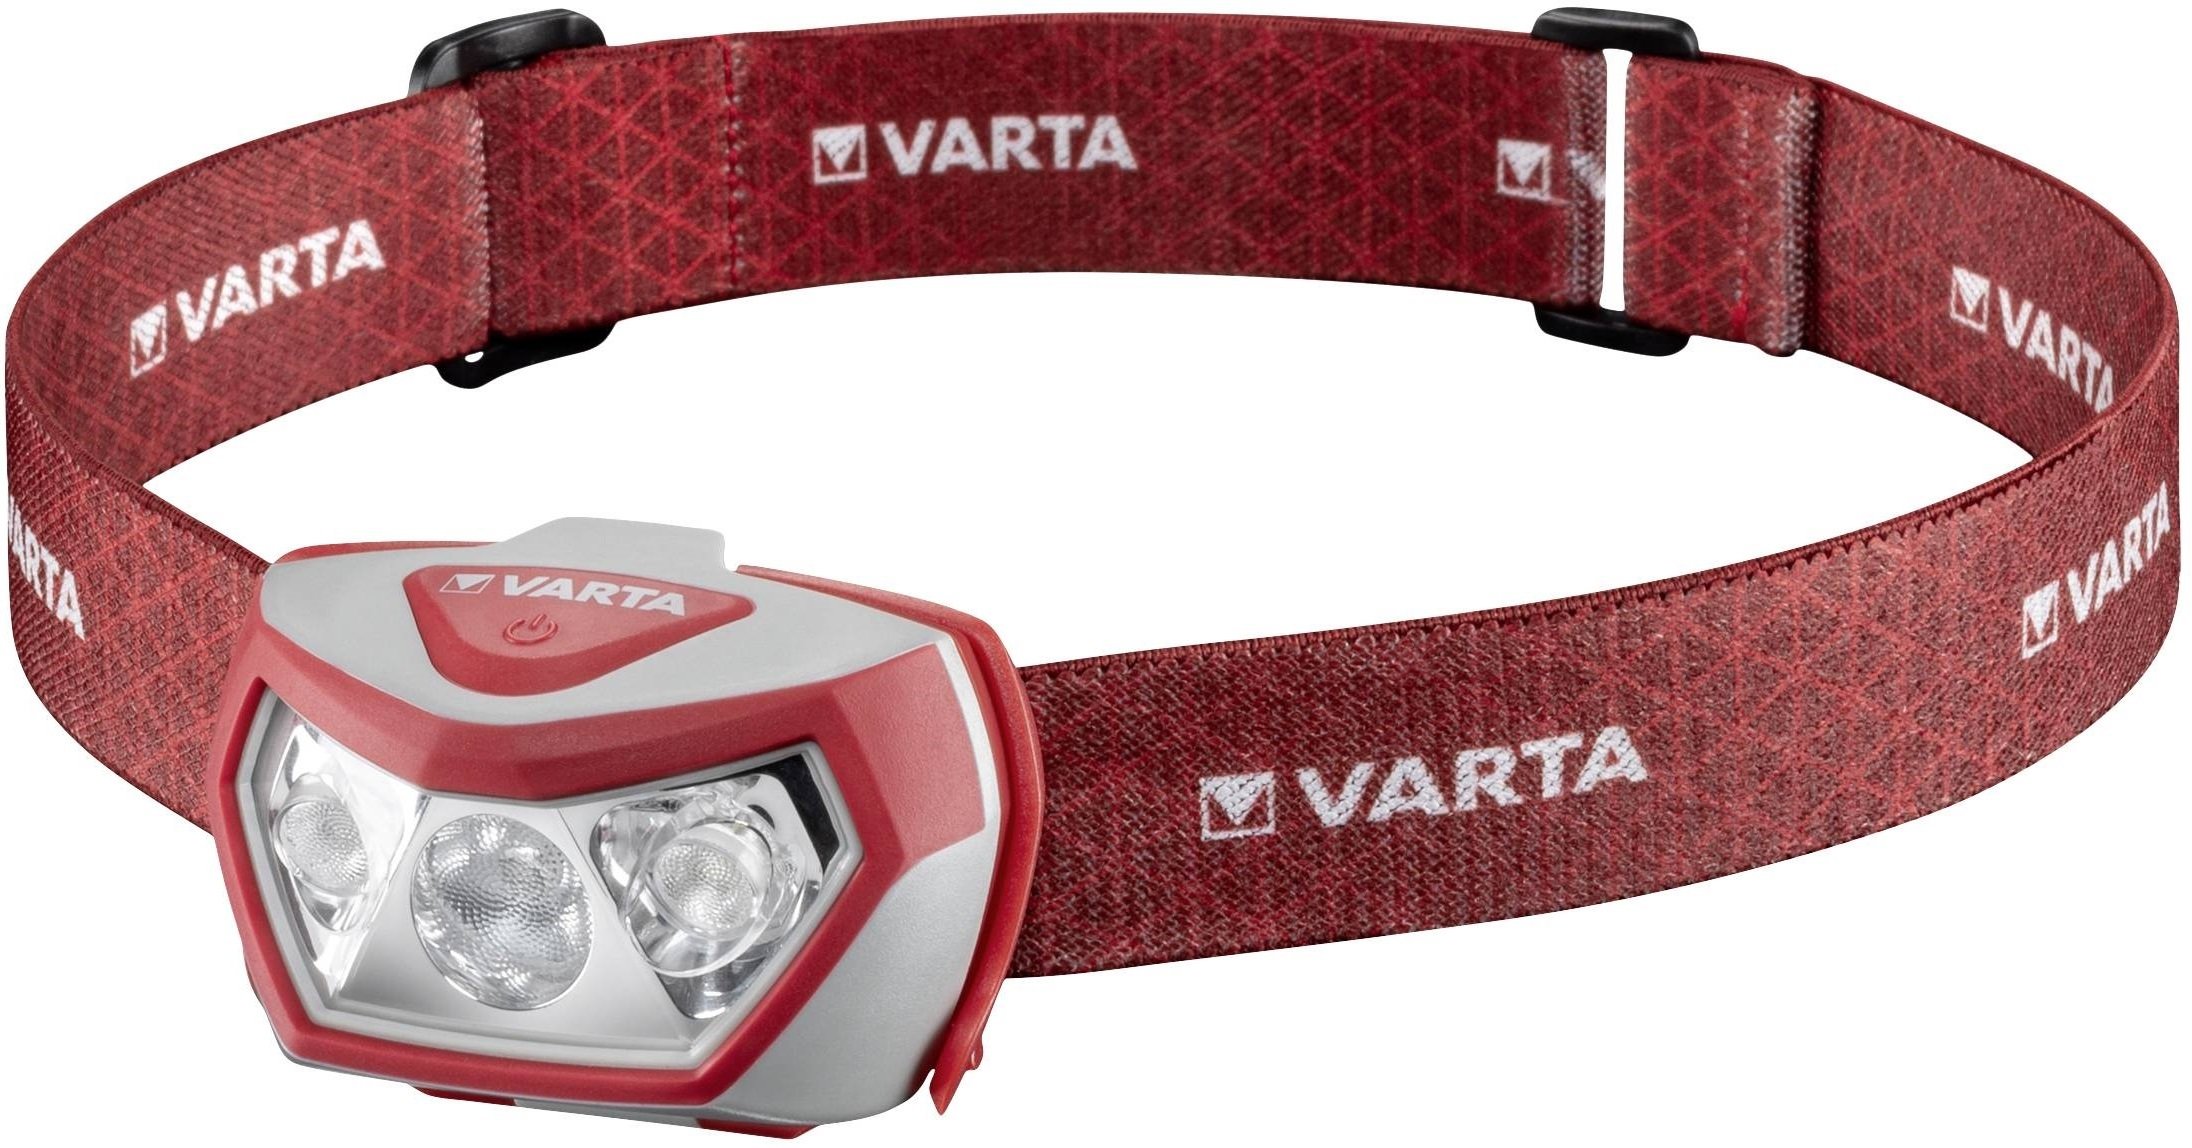 Налобный фонарик Varta Outdoor Sports H20 Pro в интернет-магазине, главное фото